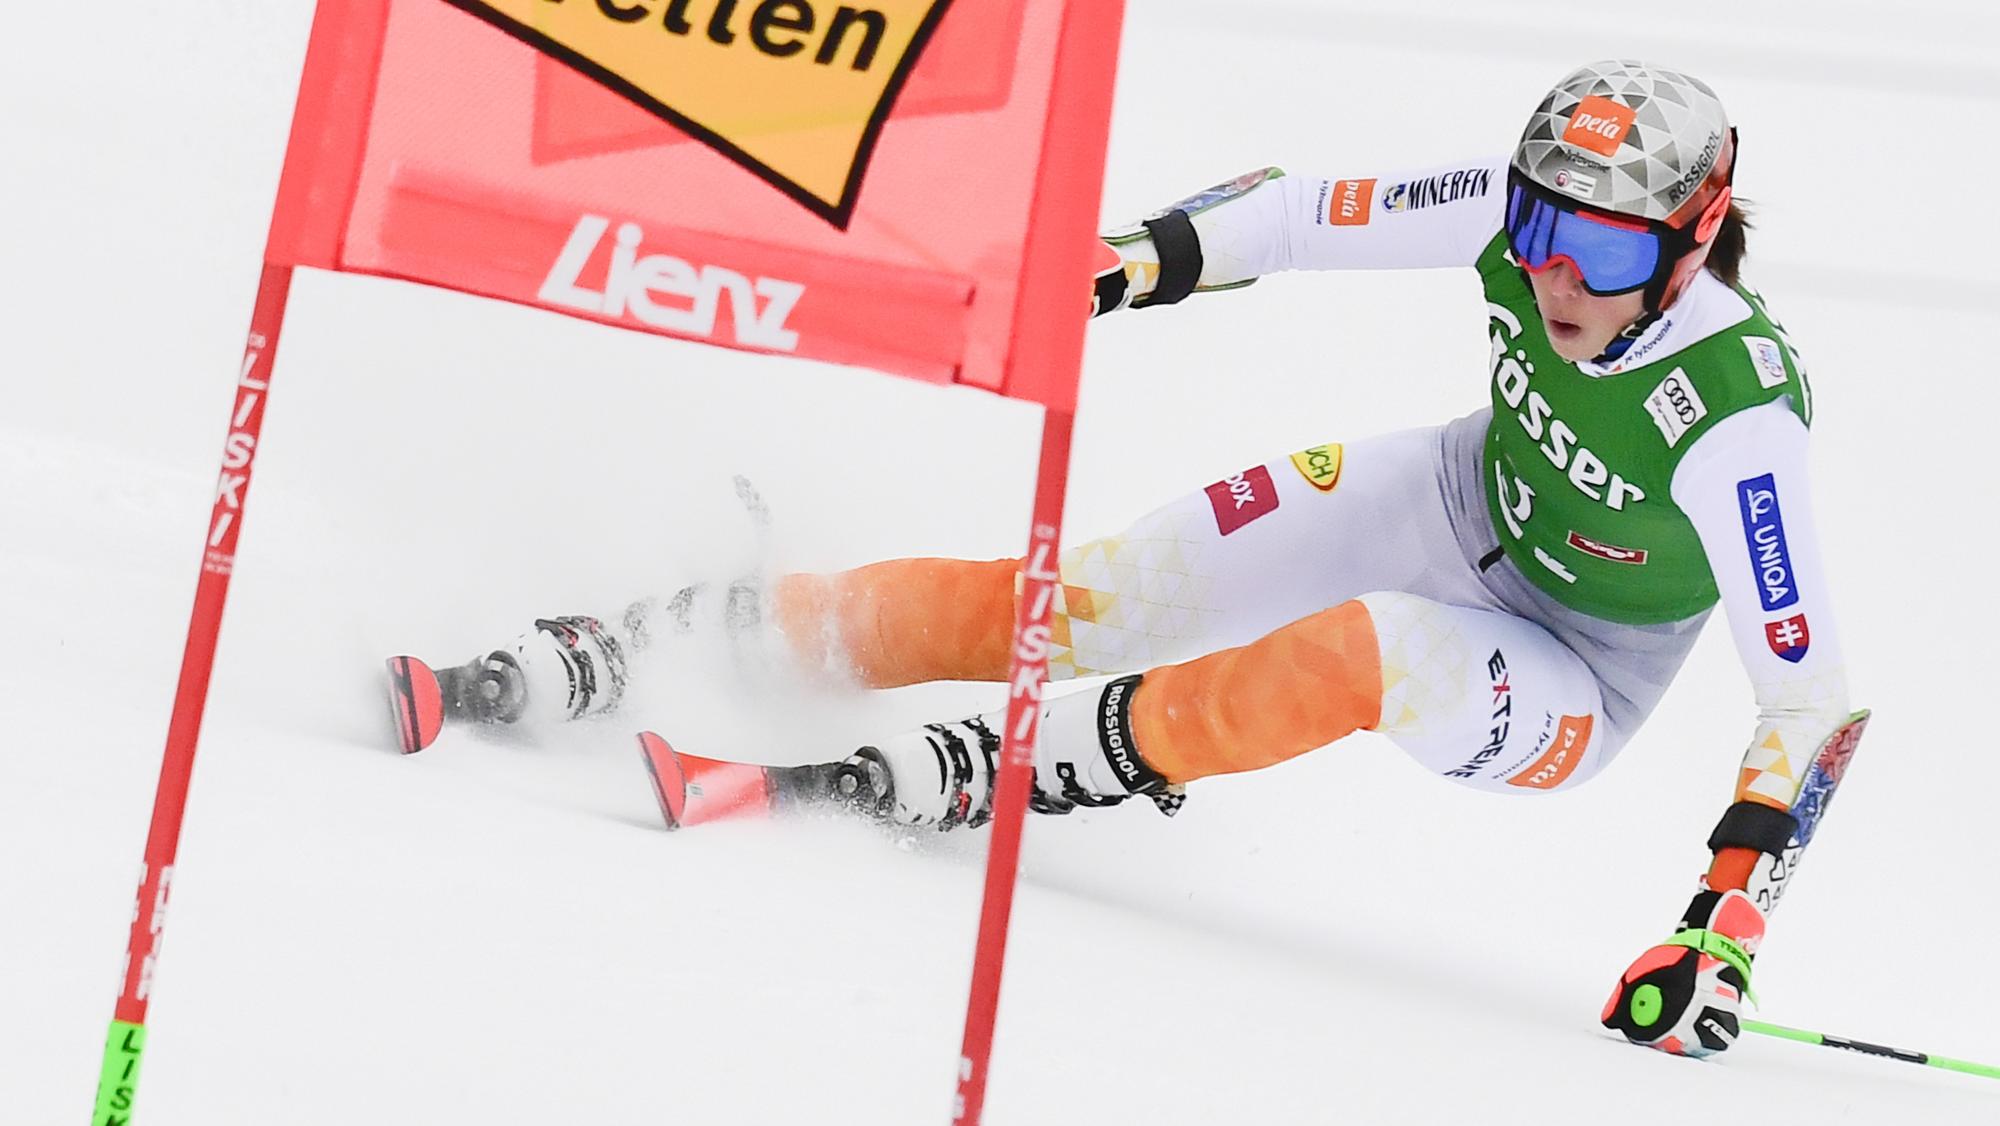 LIVE: Petra Vlhová dnes - 1. kolo (slalom), Lienz | Šport.sk